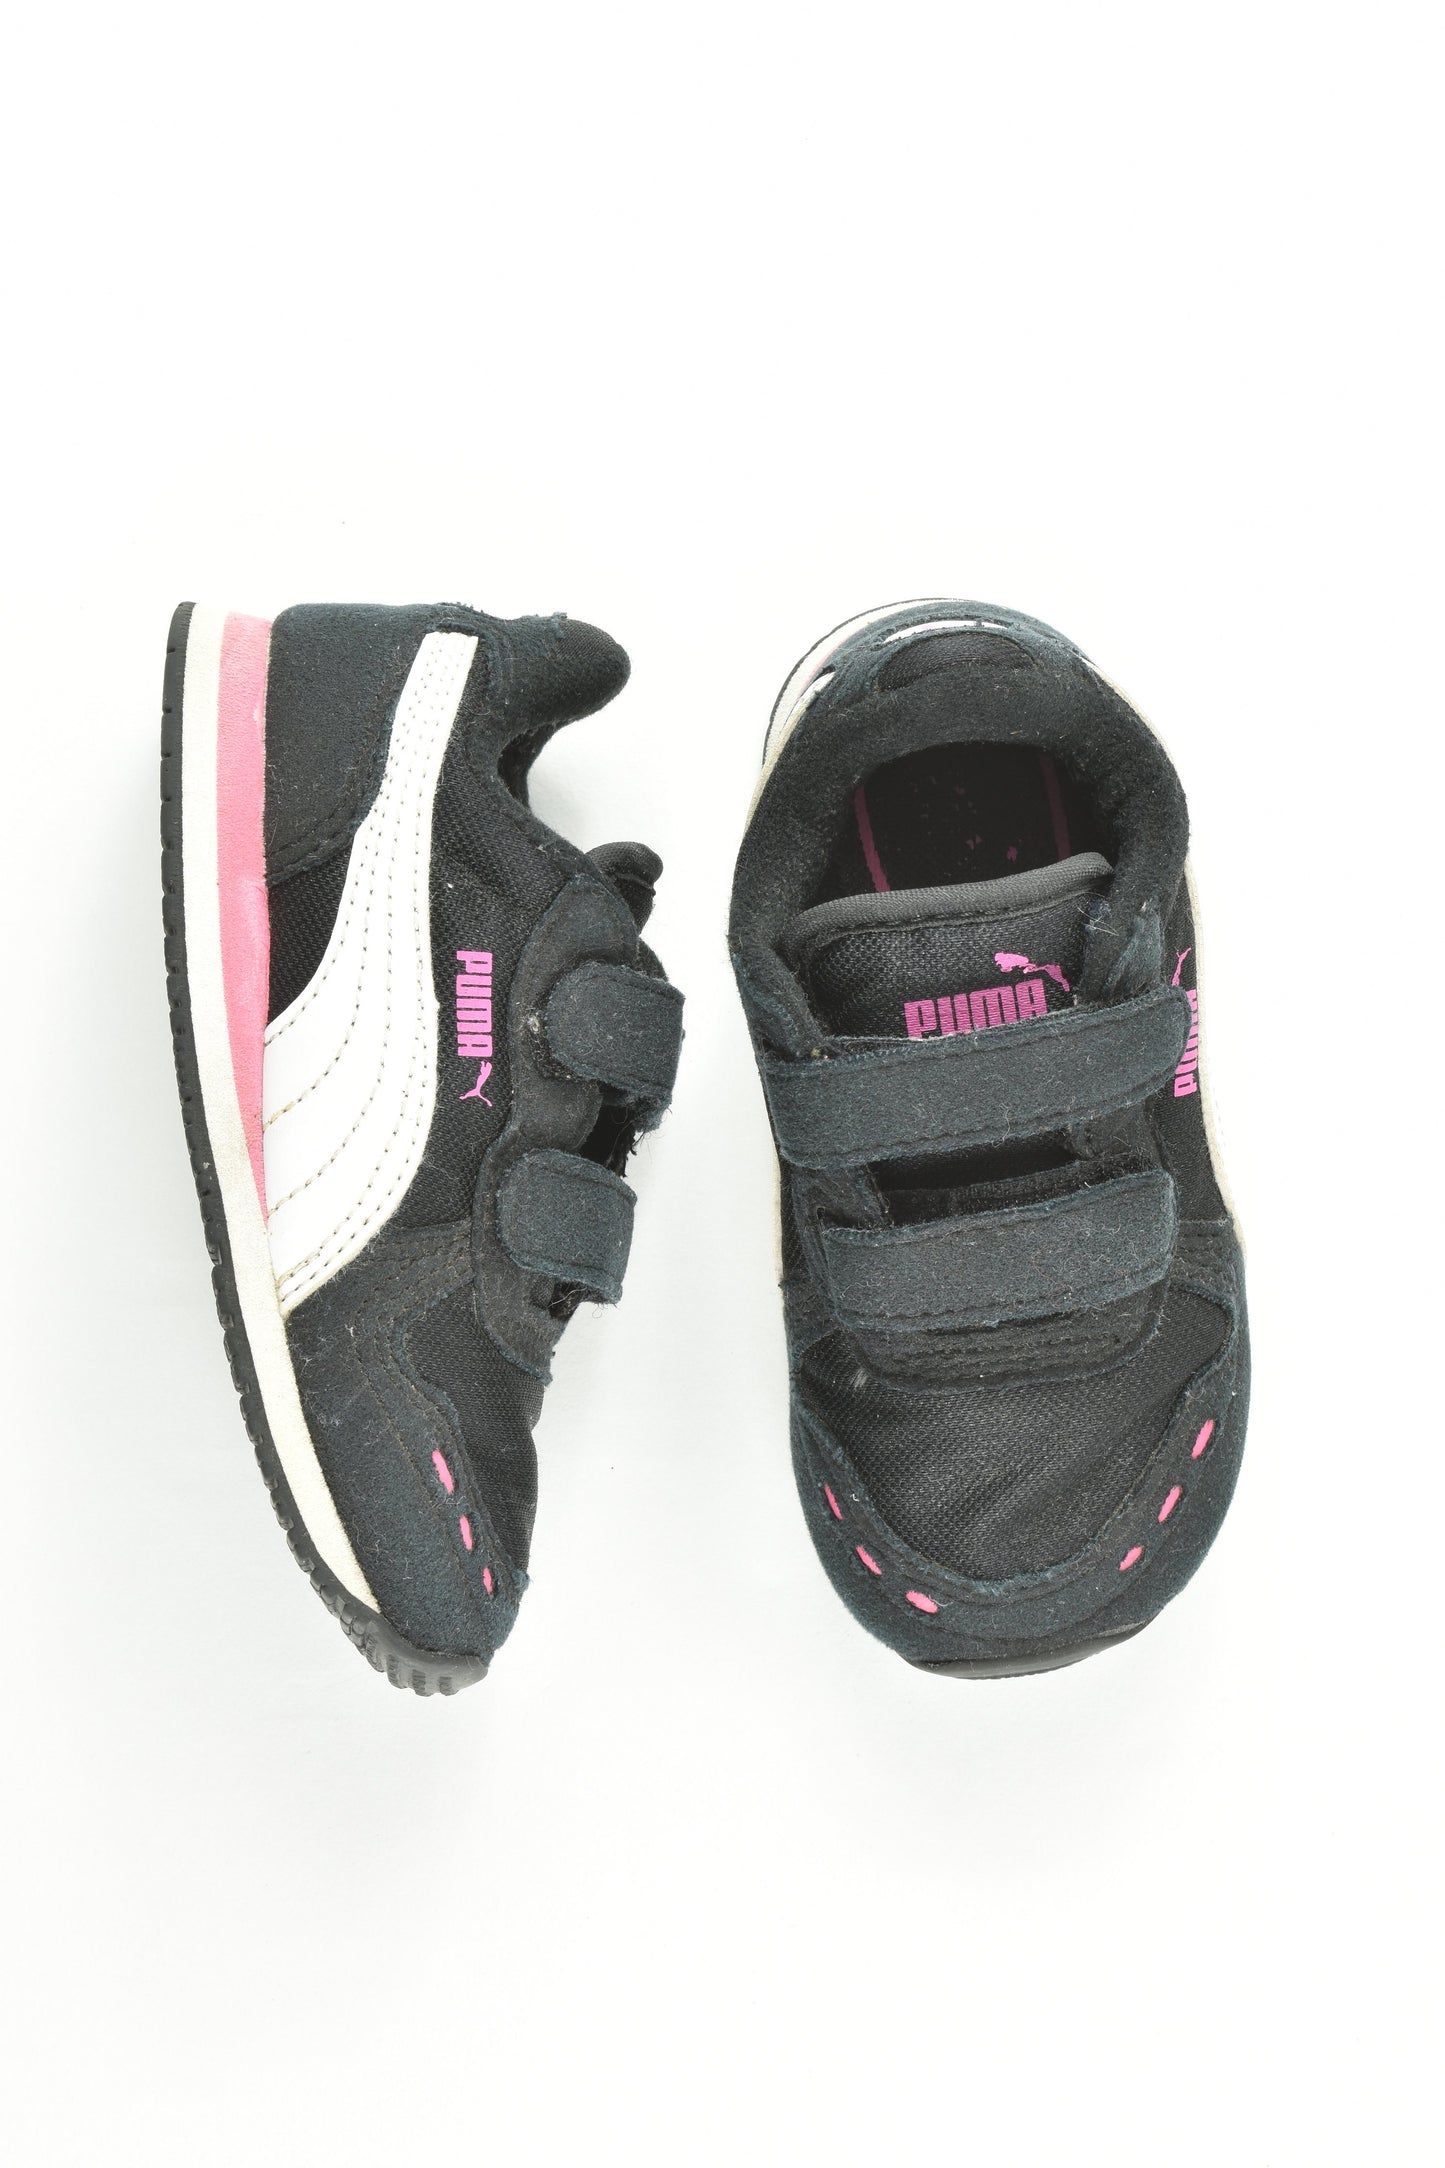 Puma Size UK 8 Shoes